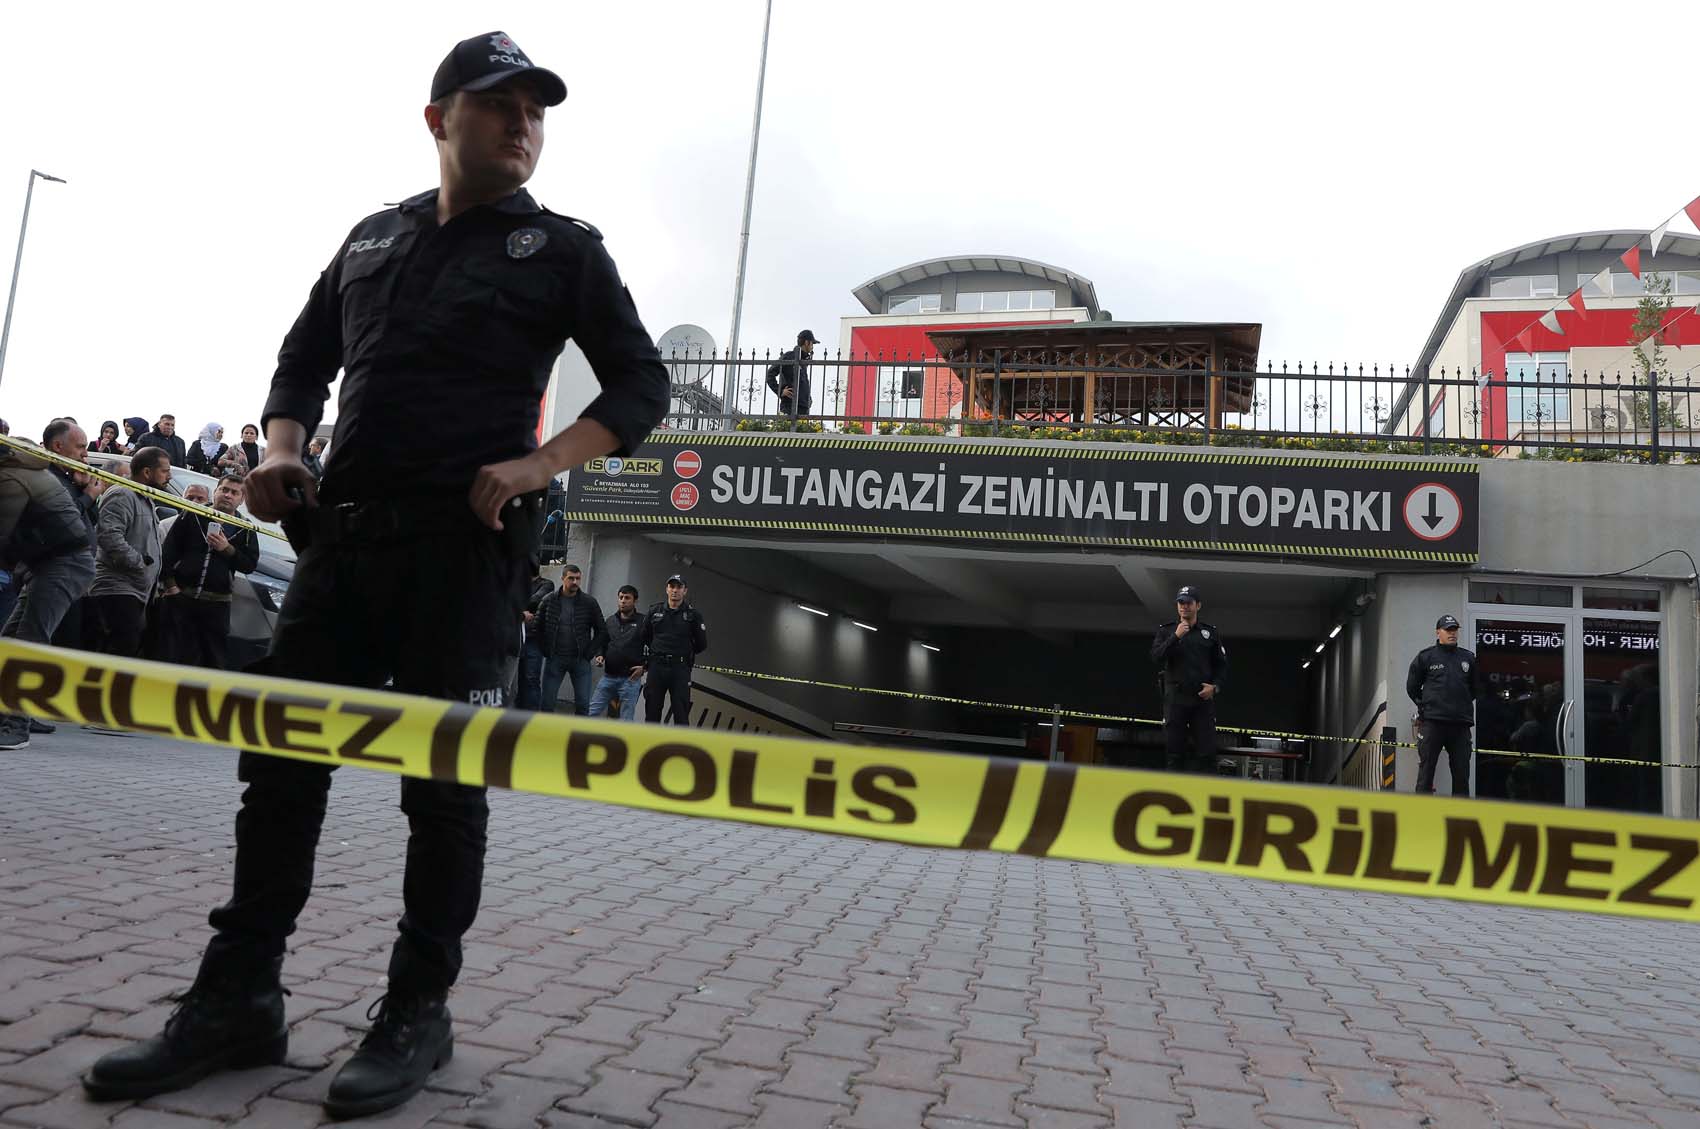 Al menos 17 extranjeros detenidos en Turquía por presuntas relaciones con el Estado Islámico